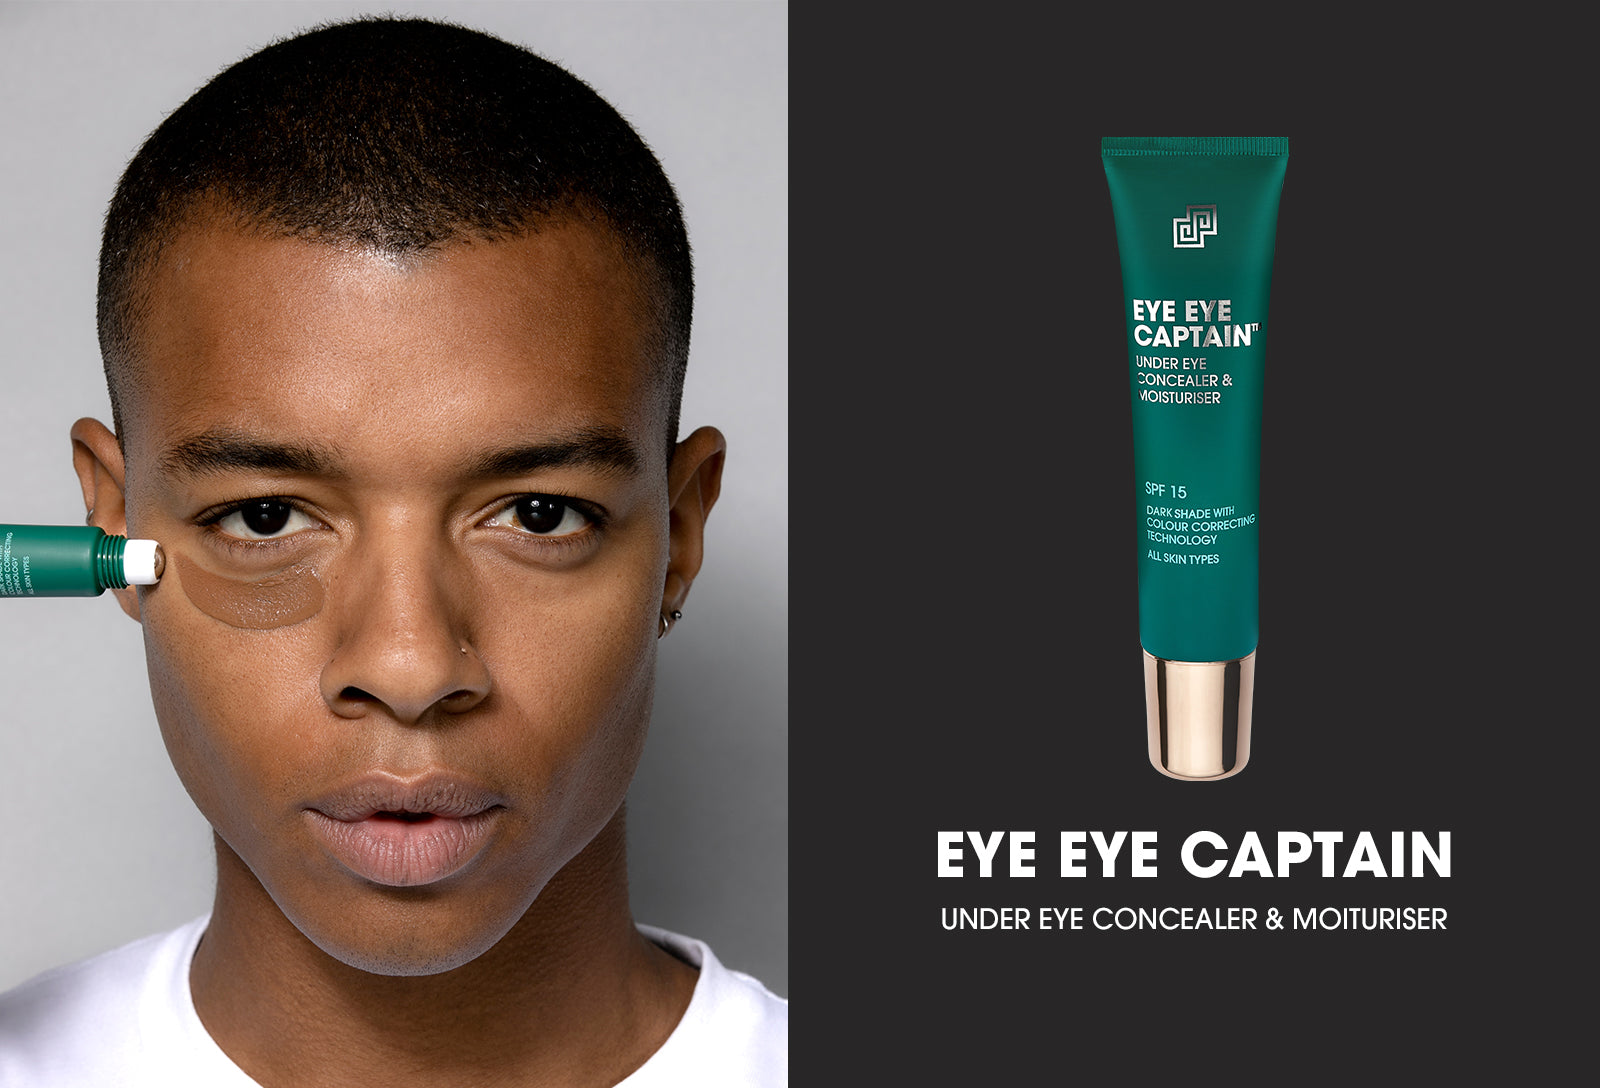 Eye Eye Captain Under eye concealer and moisturiser for men, finalist Pure Beauty Global 2020 Awards